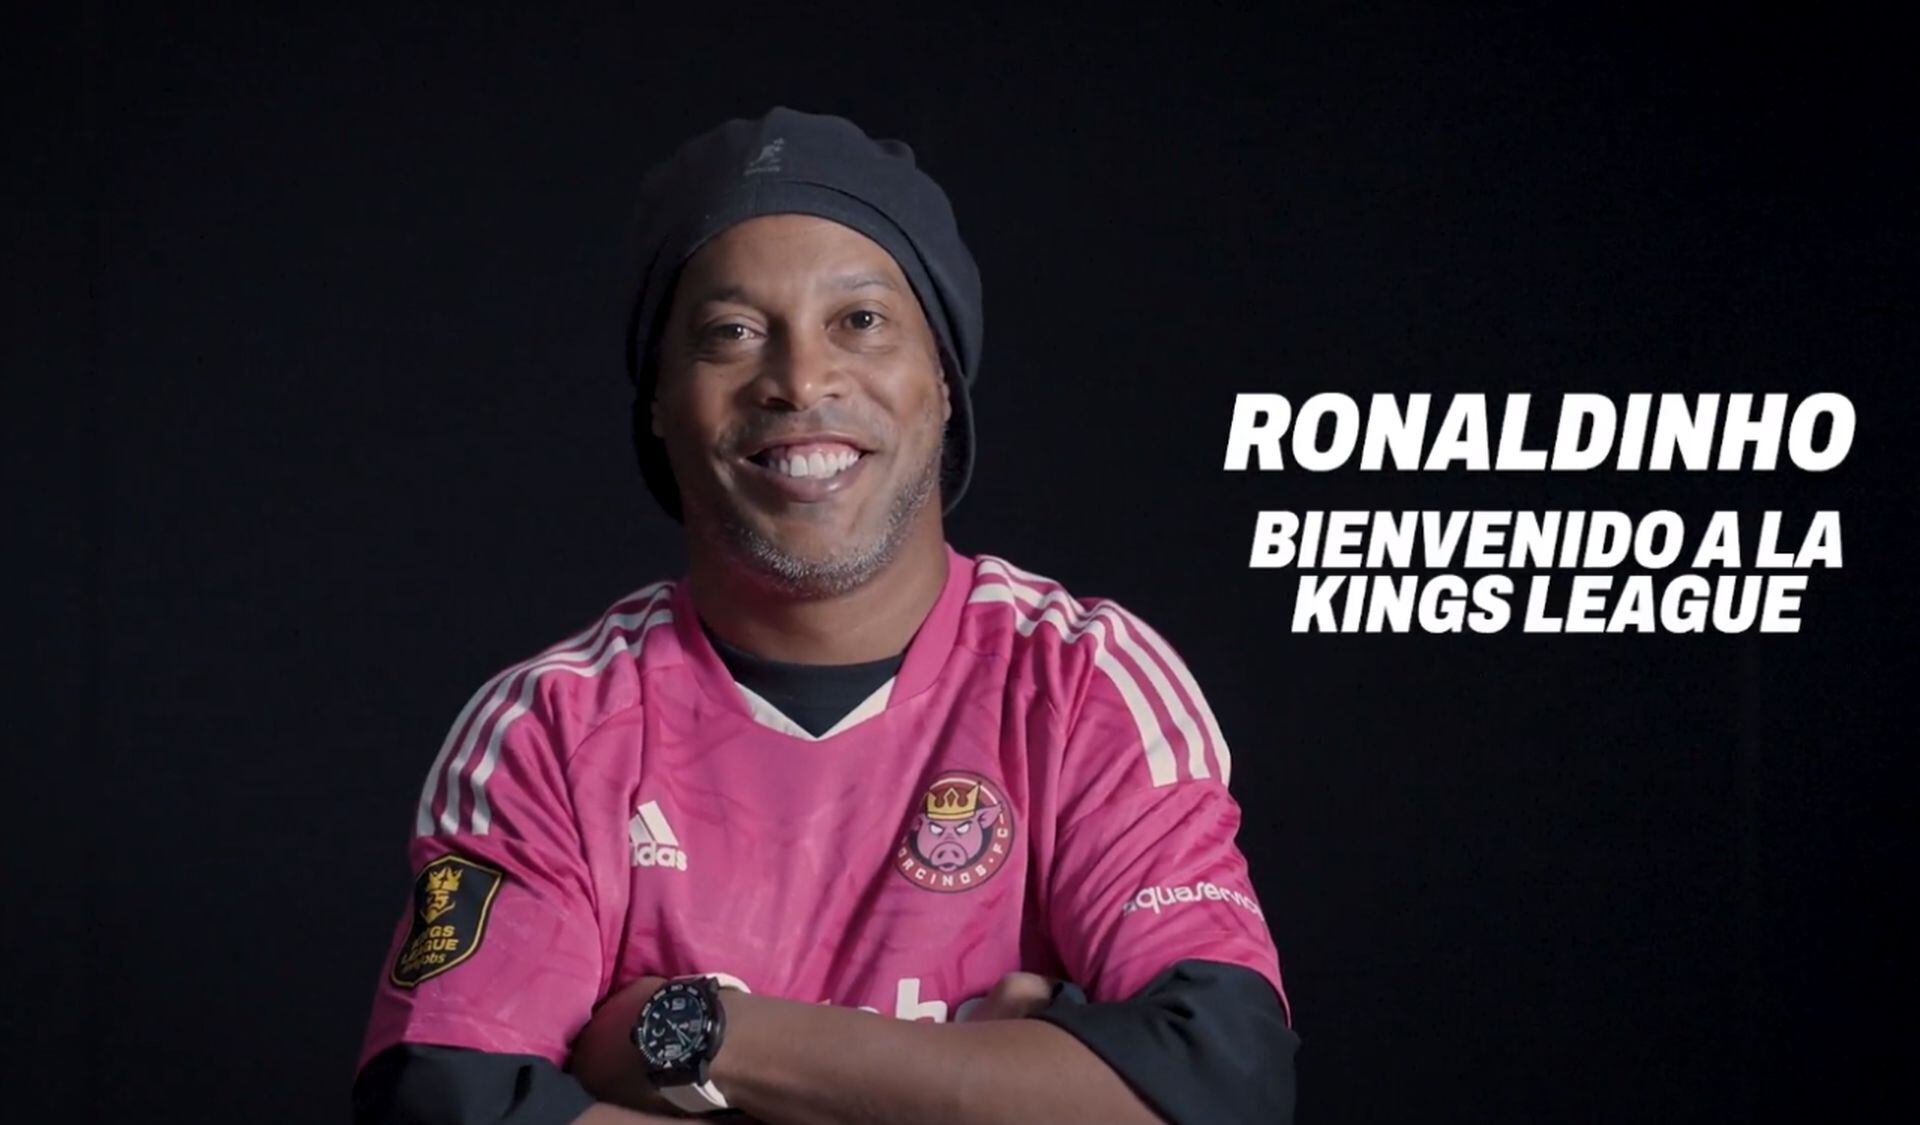 Ronaldinho hace delirar el fútbol mundial, jugará en la Kings League: hora y para verlo